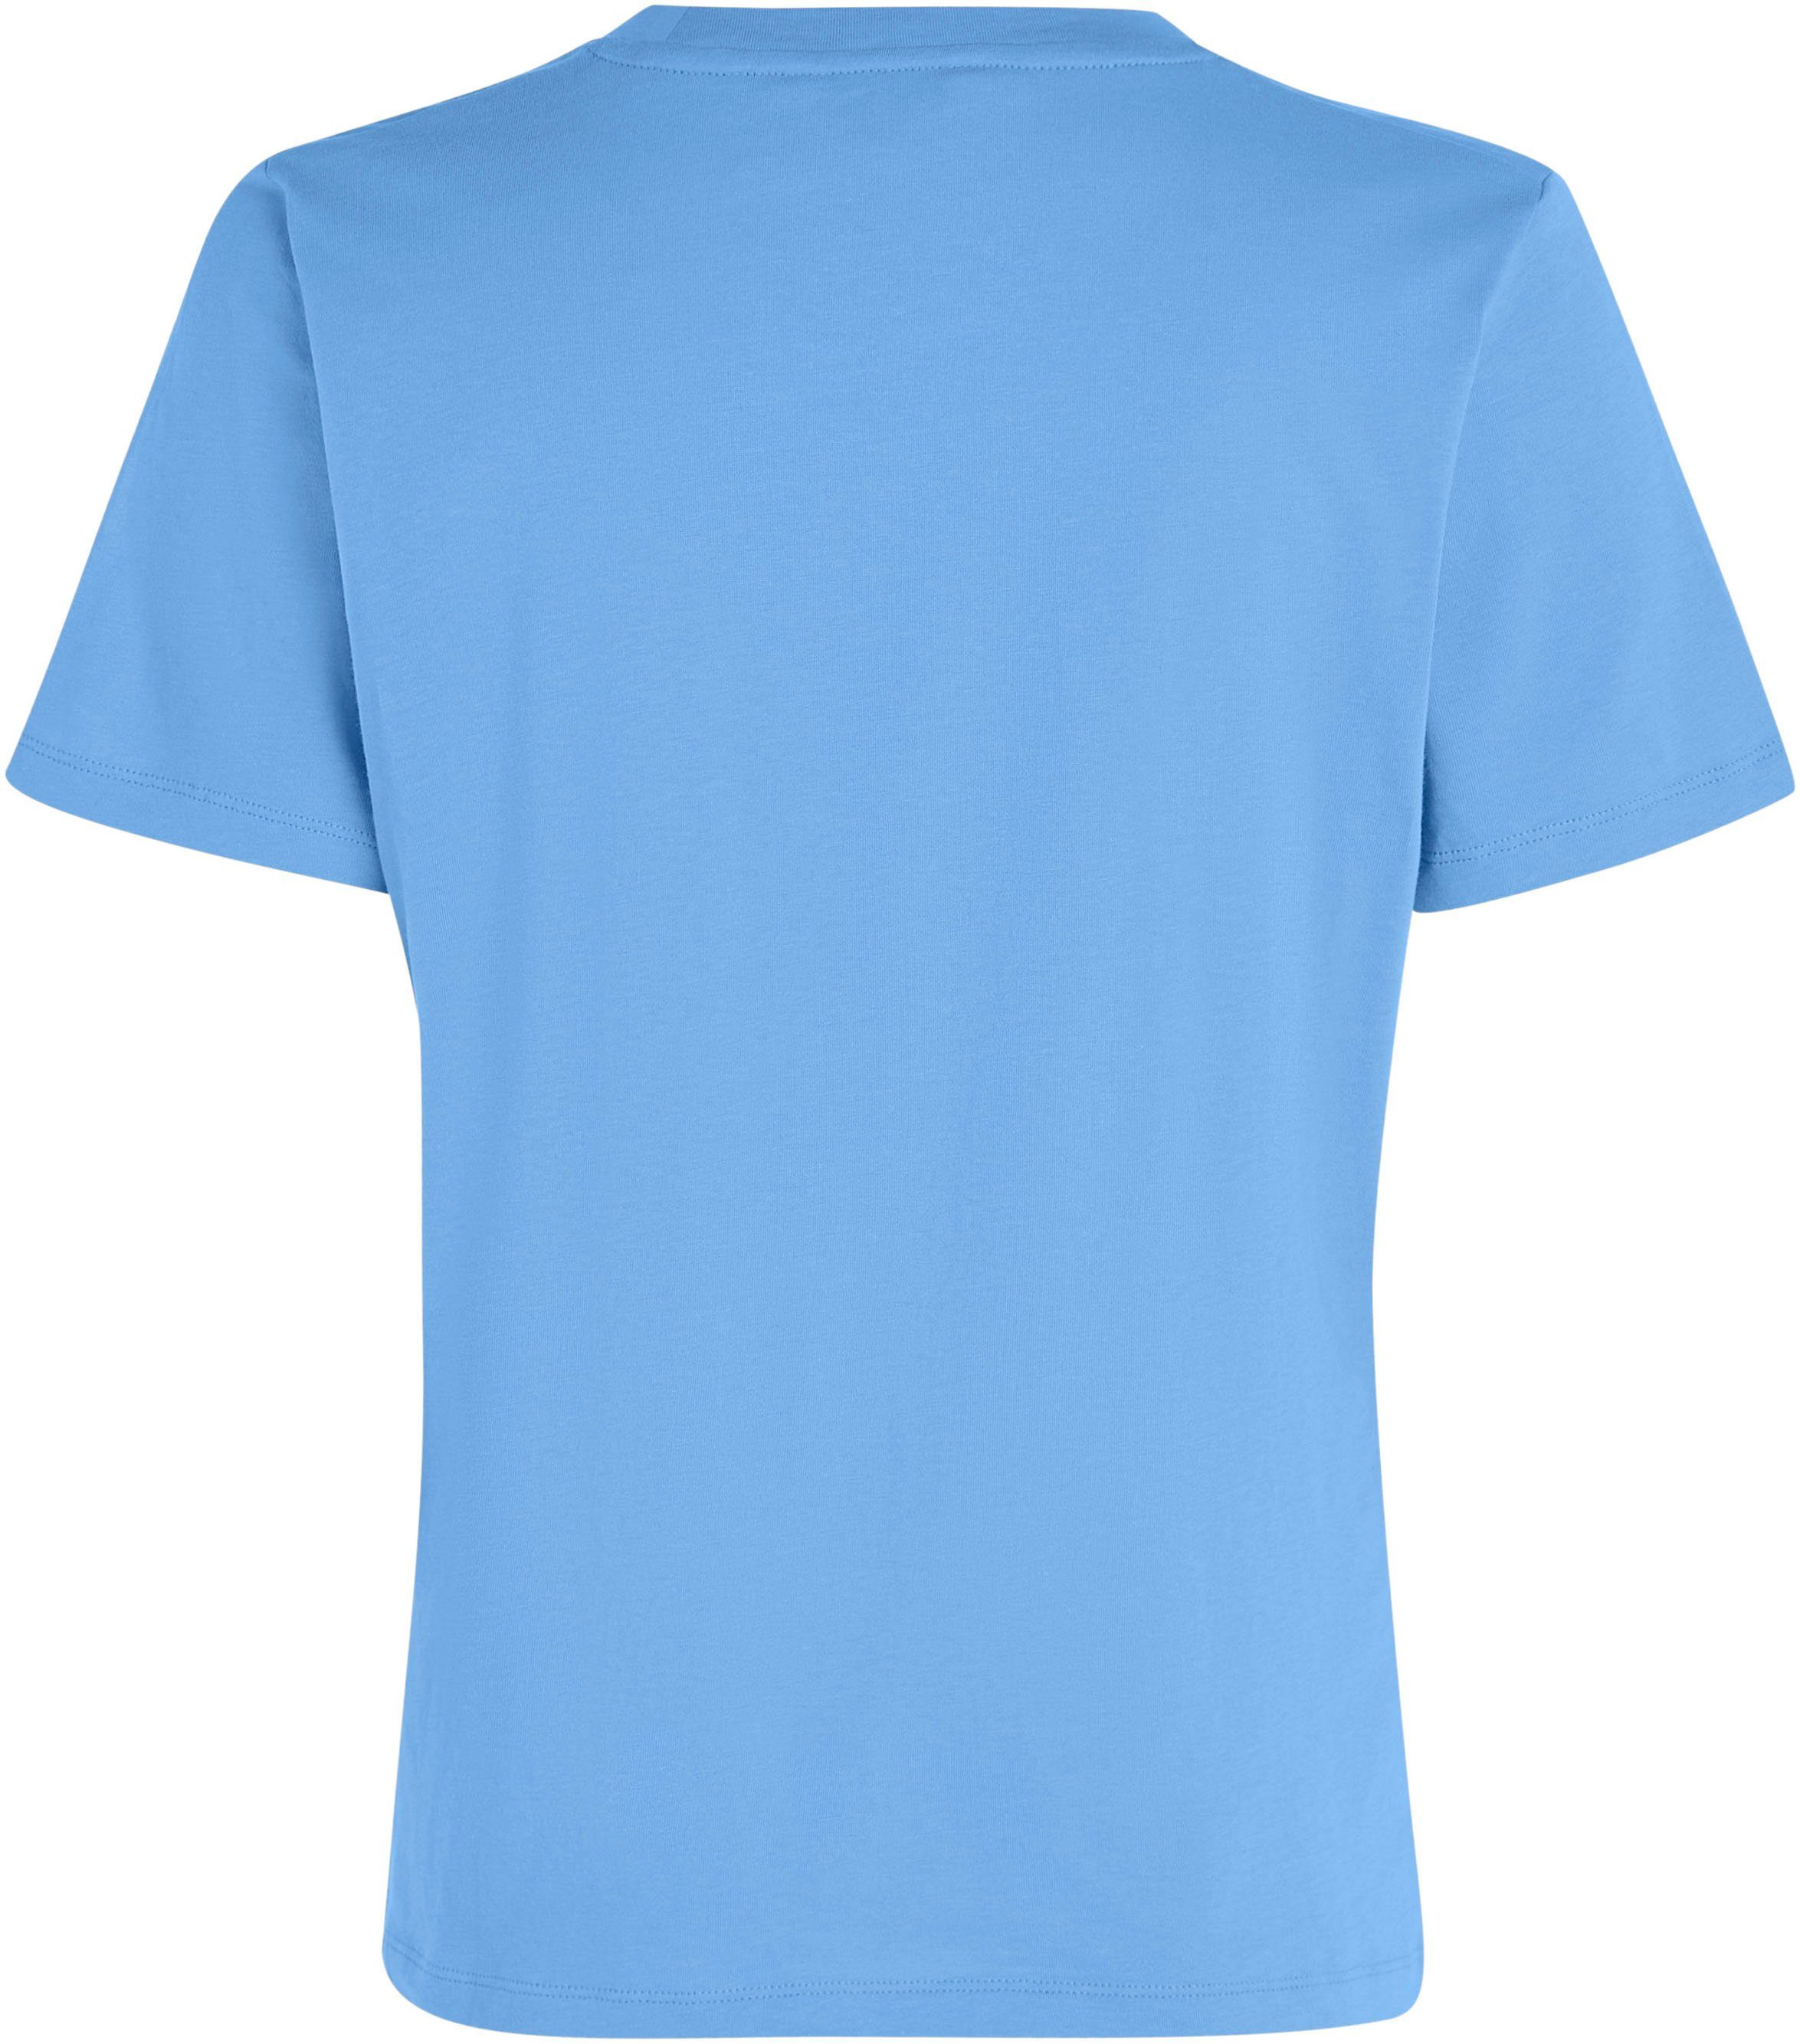 SS auf T-Shirt CORP Blue mit Markenlabel Tommy Hilfiger LOGO der REG Brust C-NK Spell